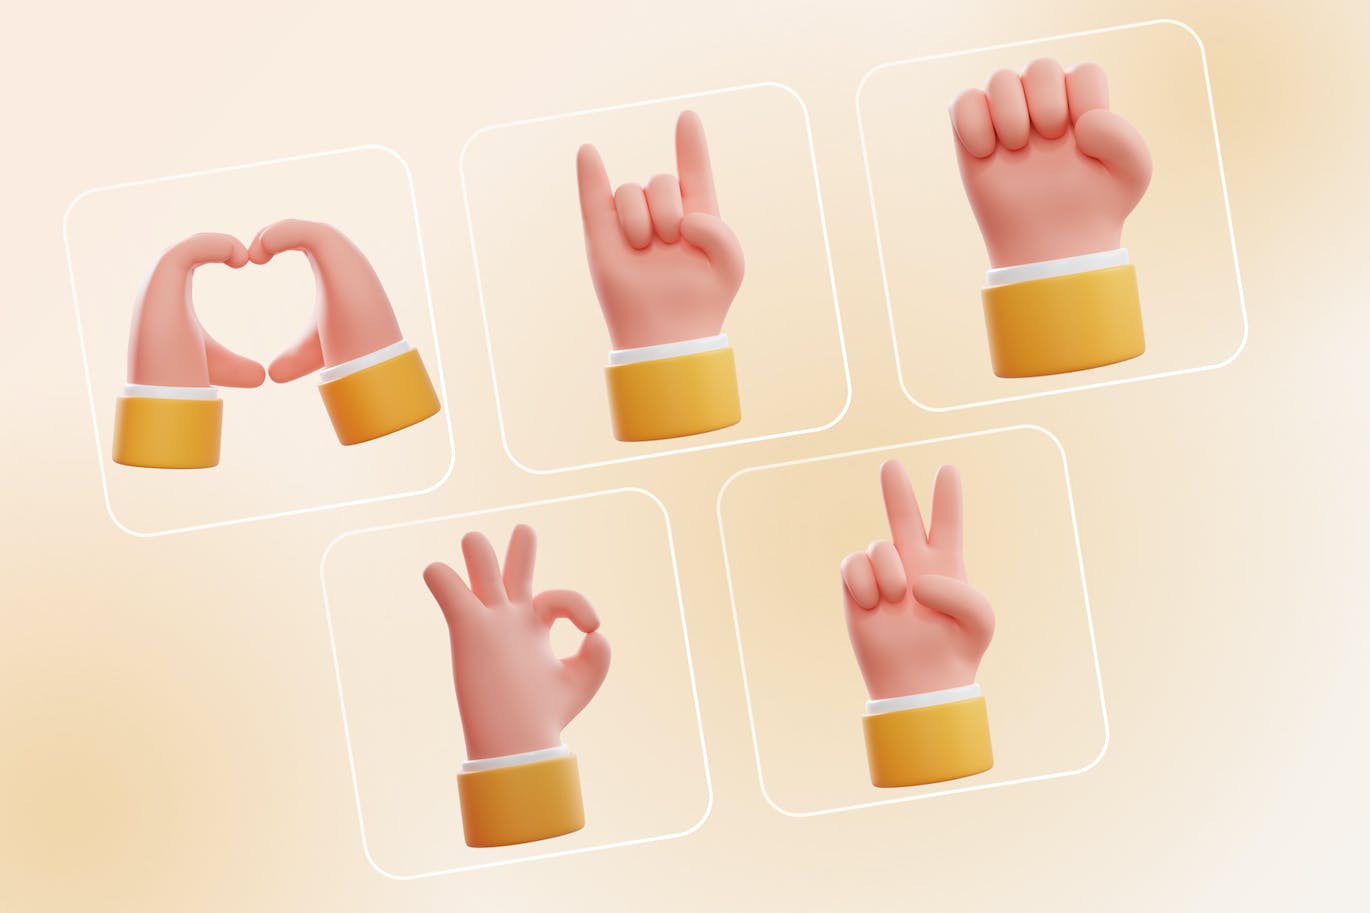 卡通3D摇滚主题手势和平之心爱举起拳头OK小胖手图标3d-rock-peace-heart-love-raised-fist-ok-hand-signs-酷社 (KUSHEW)